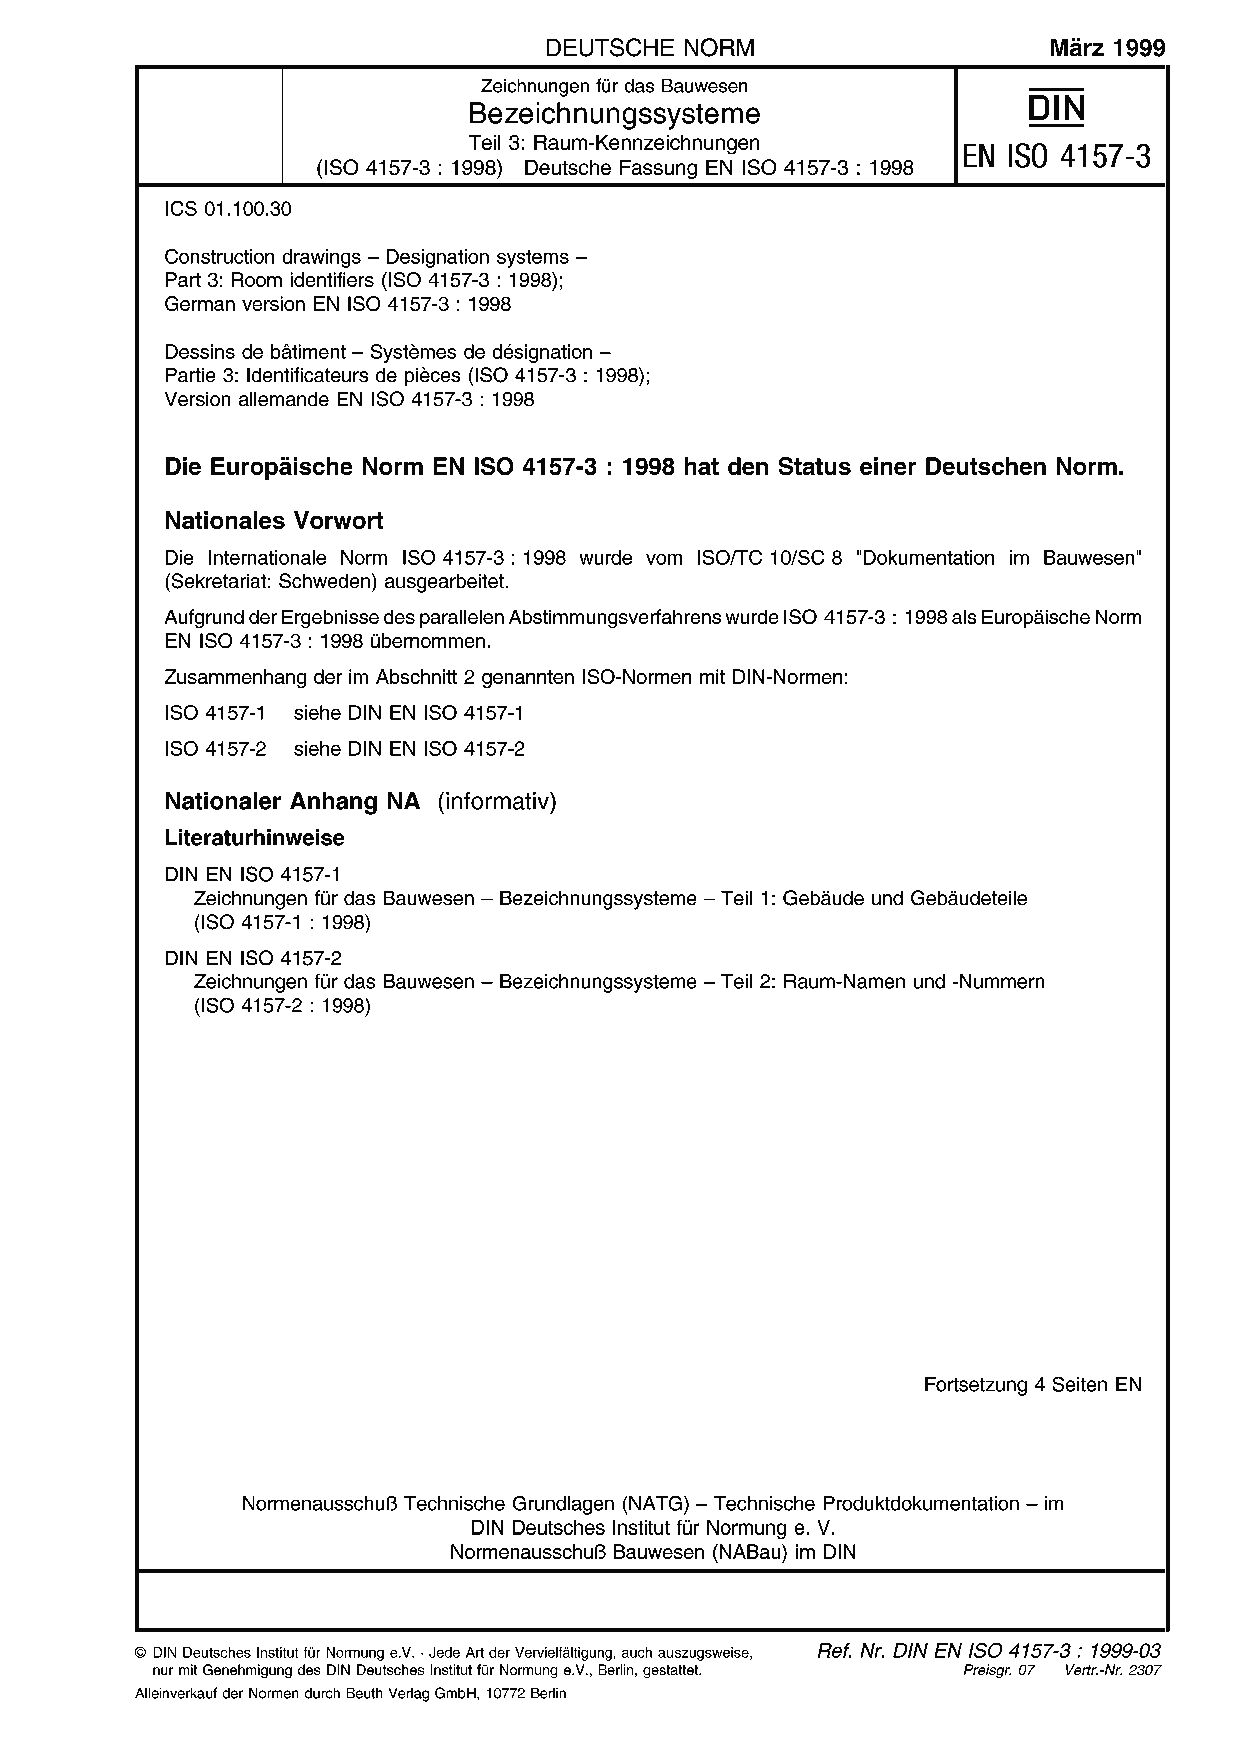 DIN EN ISO 4157-3:1999